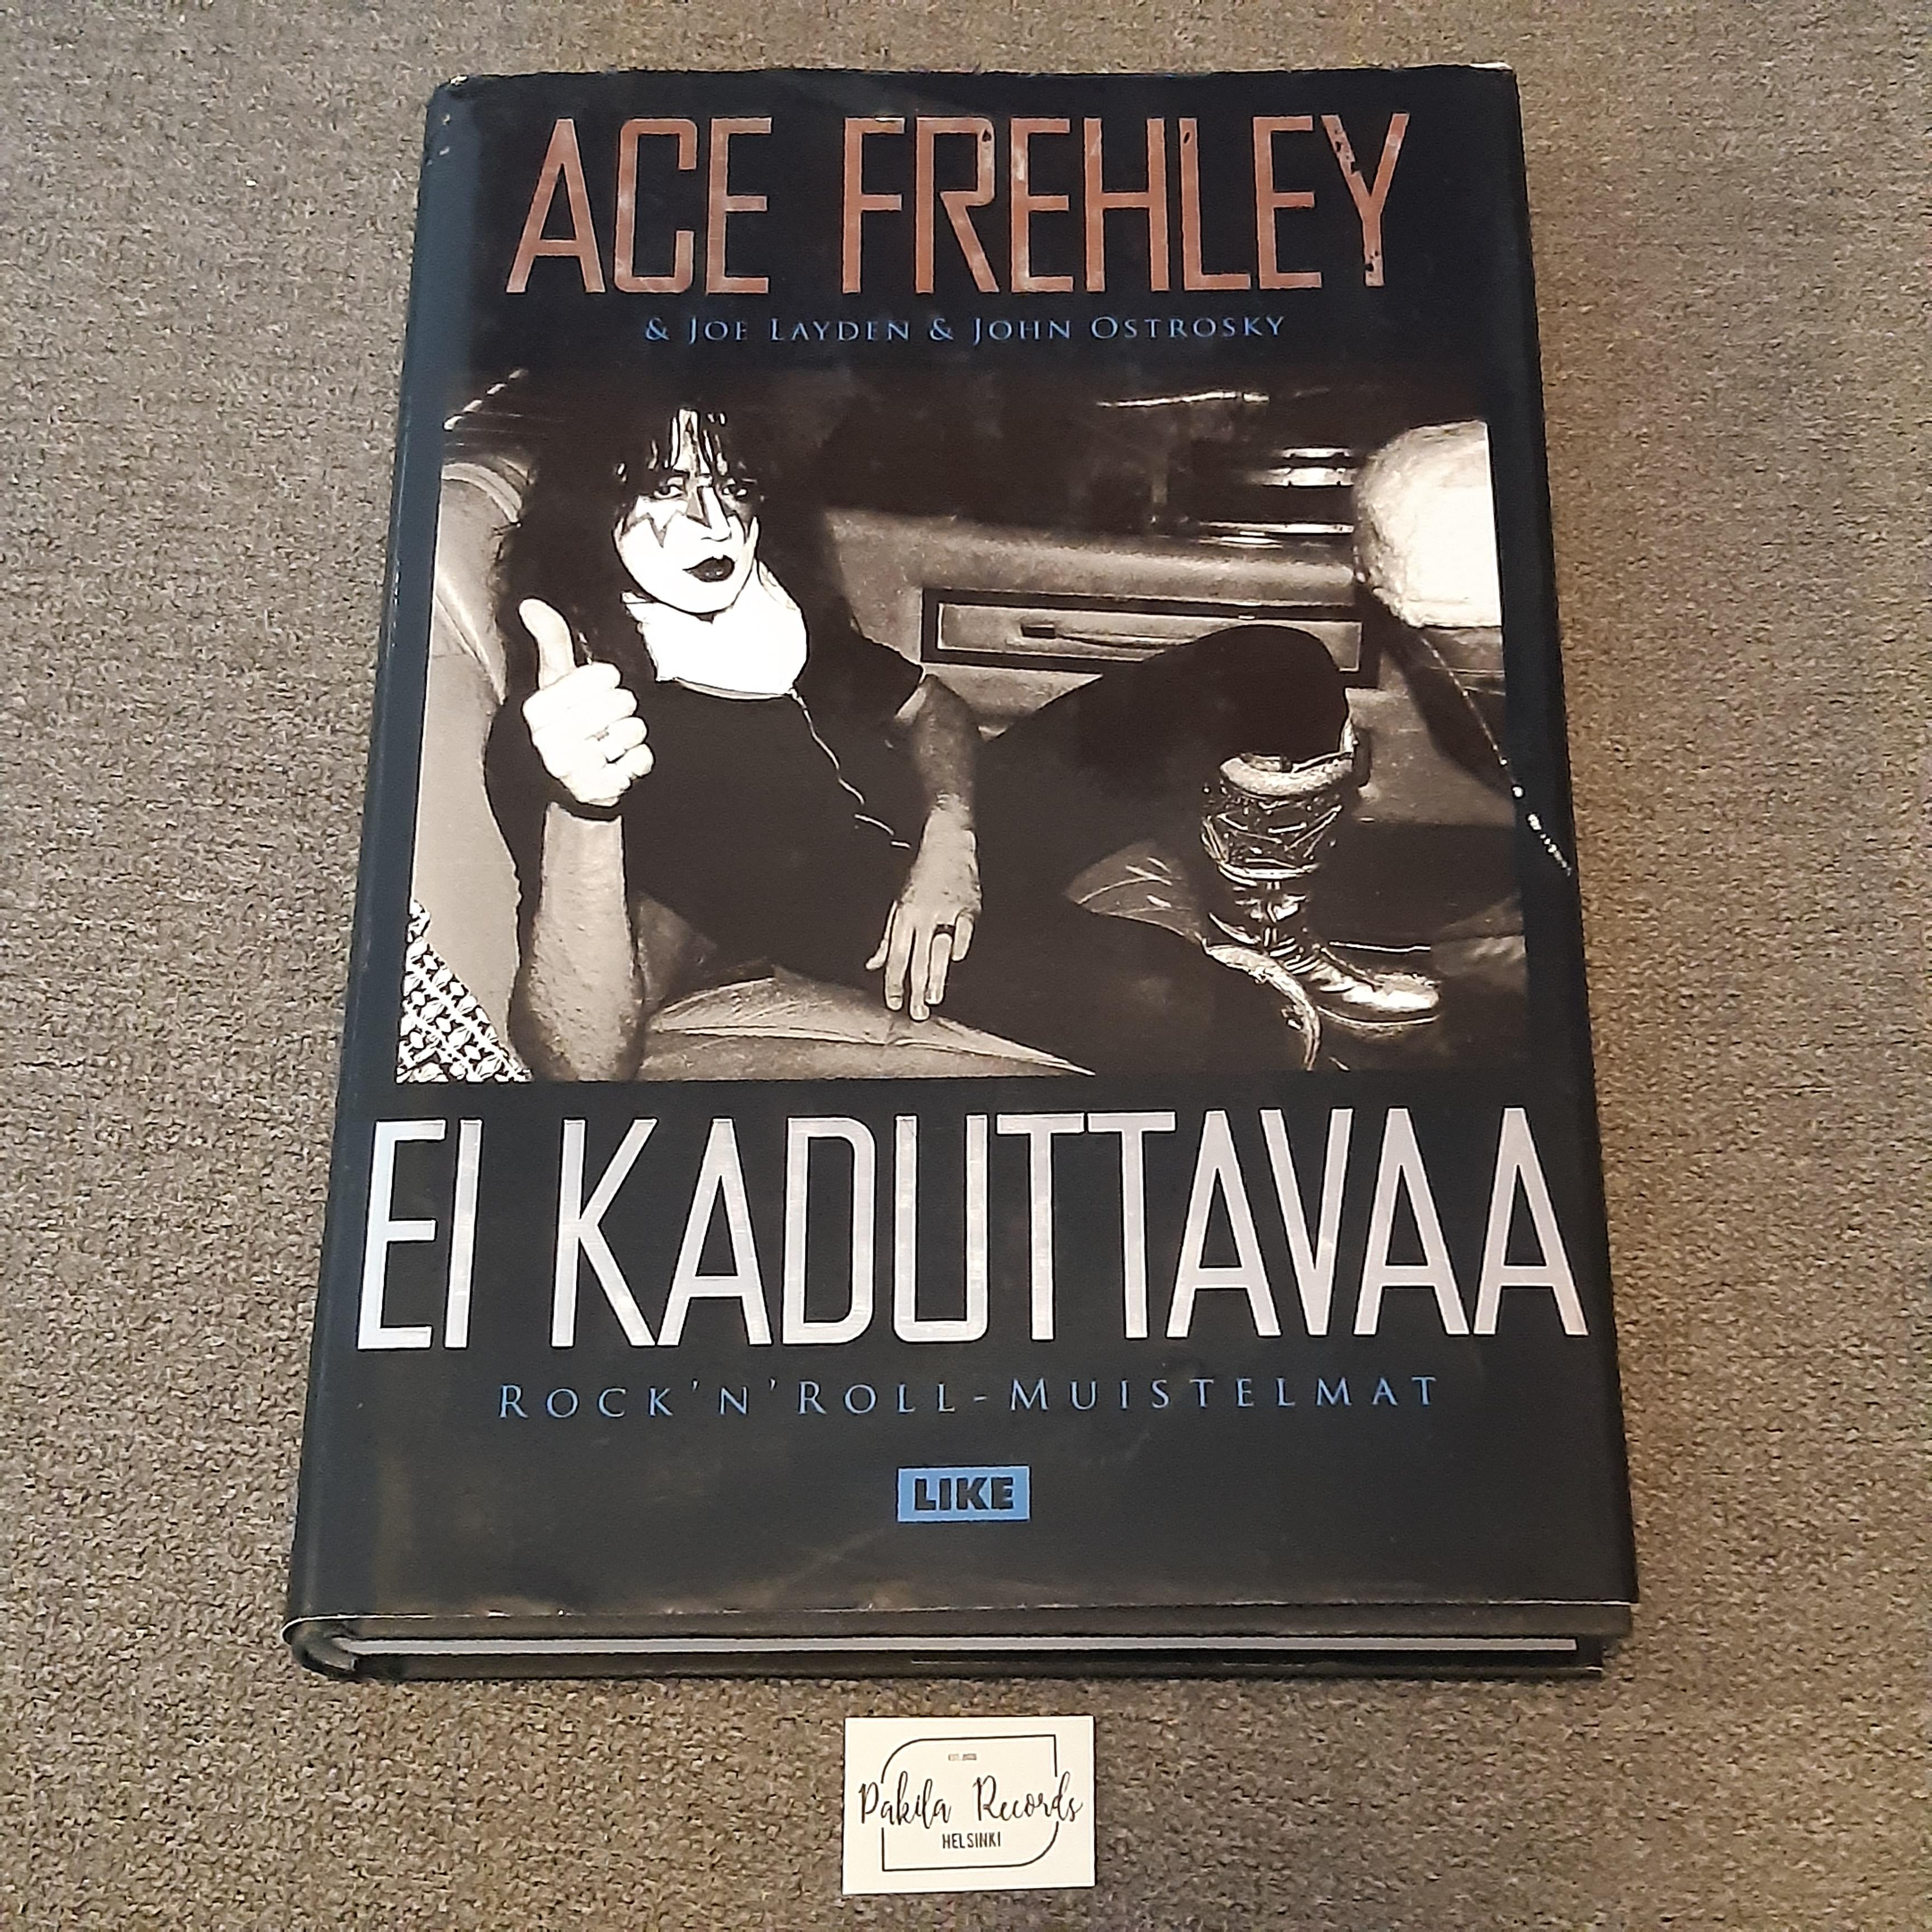 Ace Frehley, Ei kaduttavaa - Ace Frehley, Joe Layden, John Ostrosky - Kirja (käytetty)